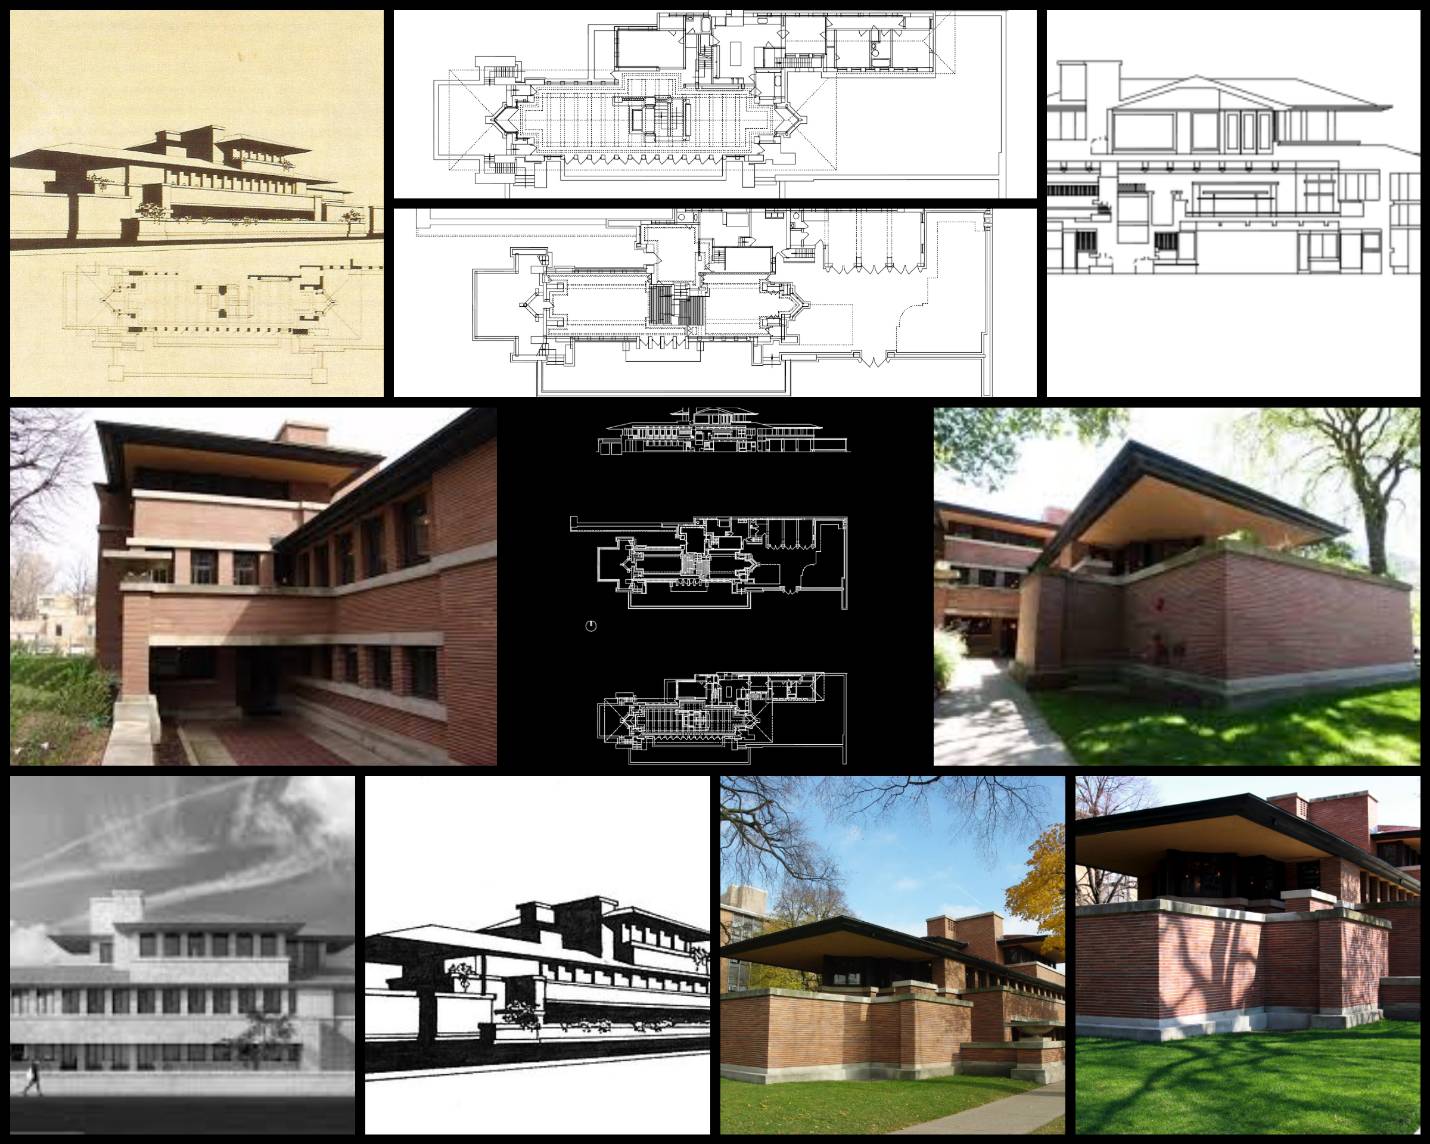 【世界知名建築案例研究CAD設計施工圖】Robie house-法蘭克·洛伊·萊特 Frank Lloyd Wright